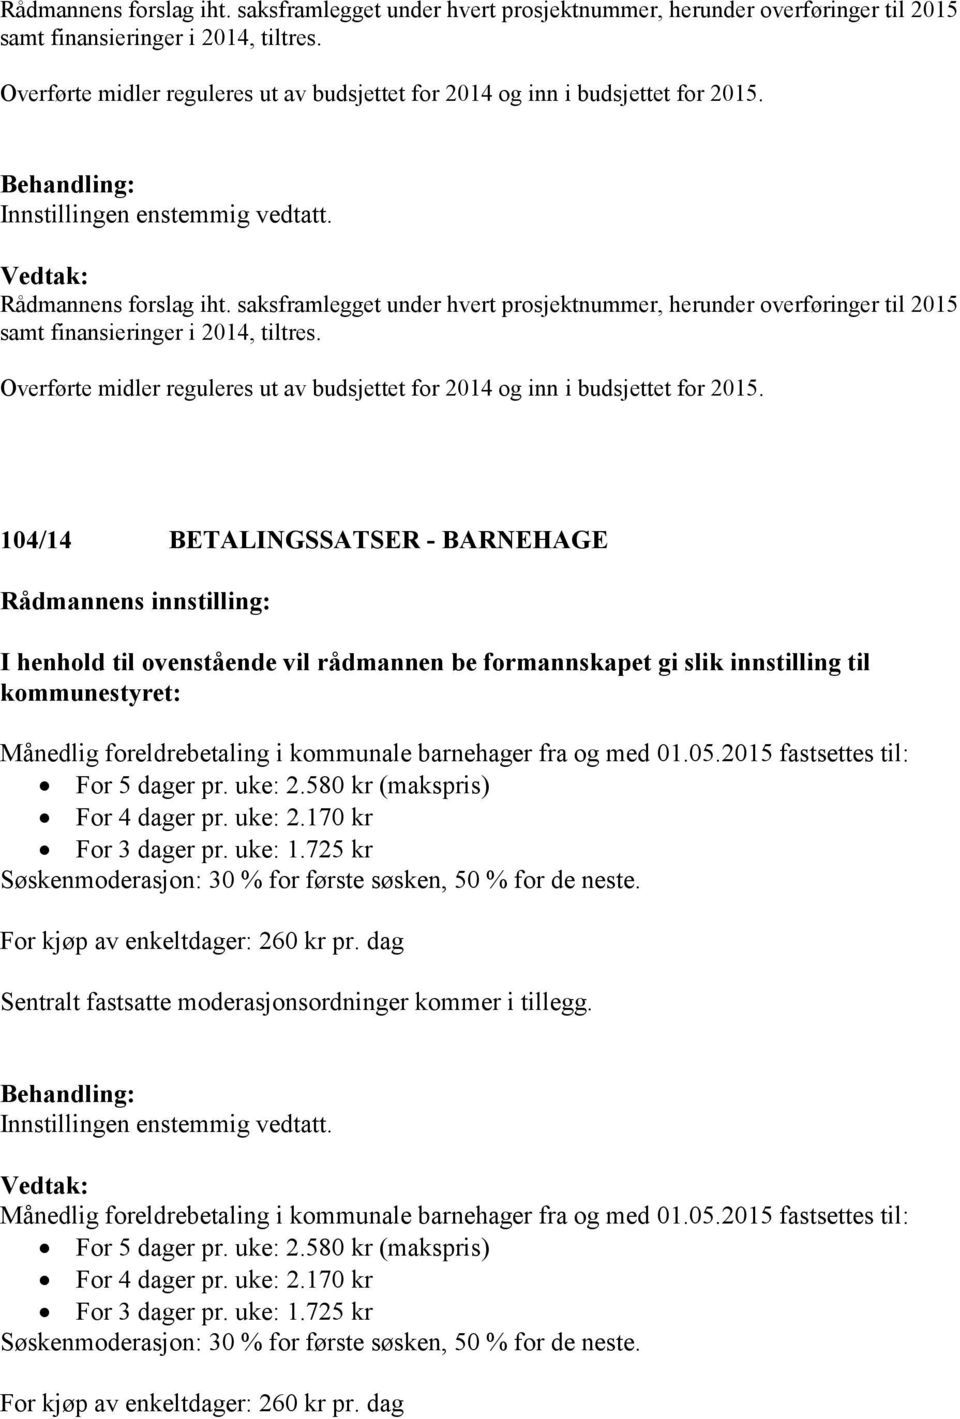 104/14 BETALINGSSATSER - BARNEHAGE Månedlig foreldrebetaling i kommunale barnehager fra og med 01.05.2015 fastsettes til: For 5 dager pr. uke: 2.580 kr (makspris) For 4 dager pr. uke: 2.170 kr For 3 dager pr.